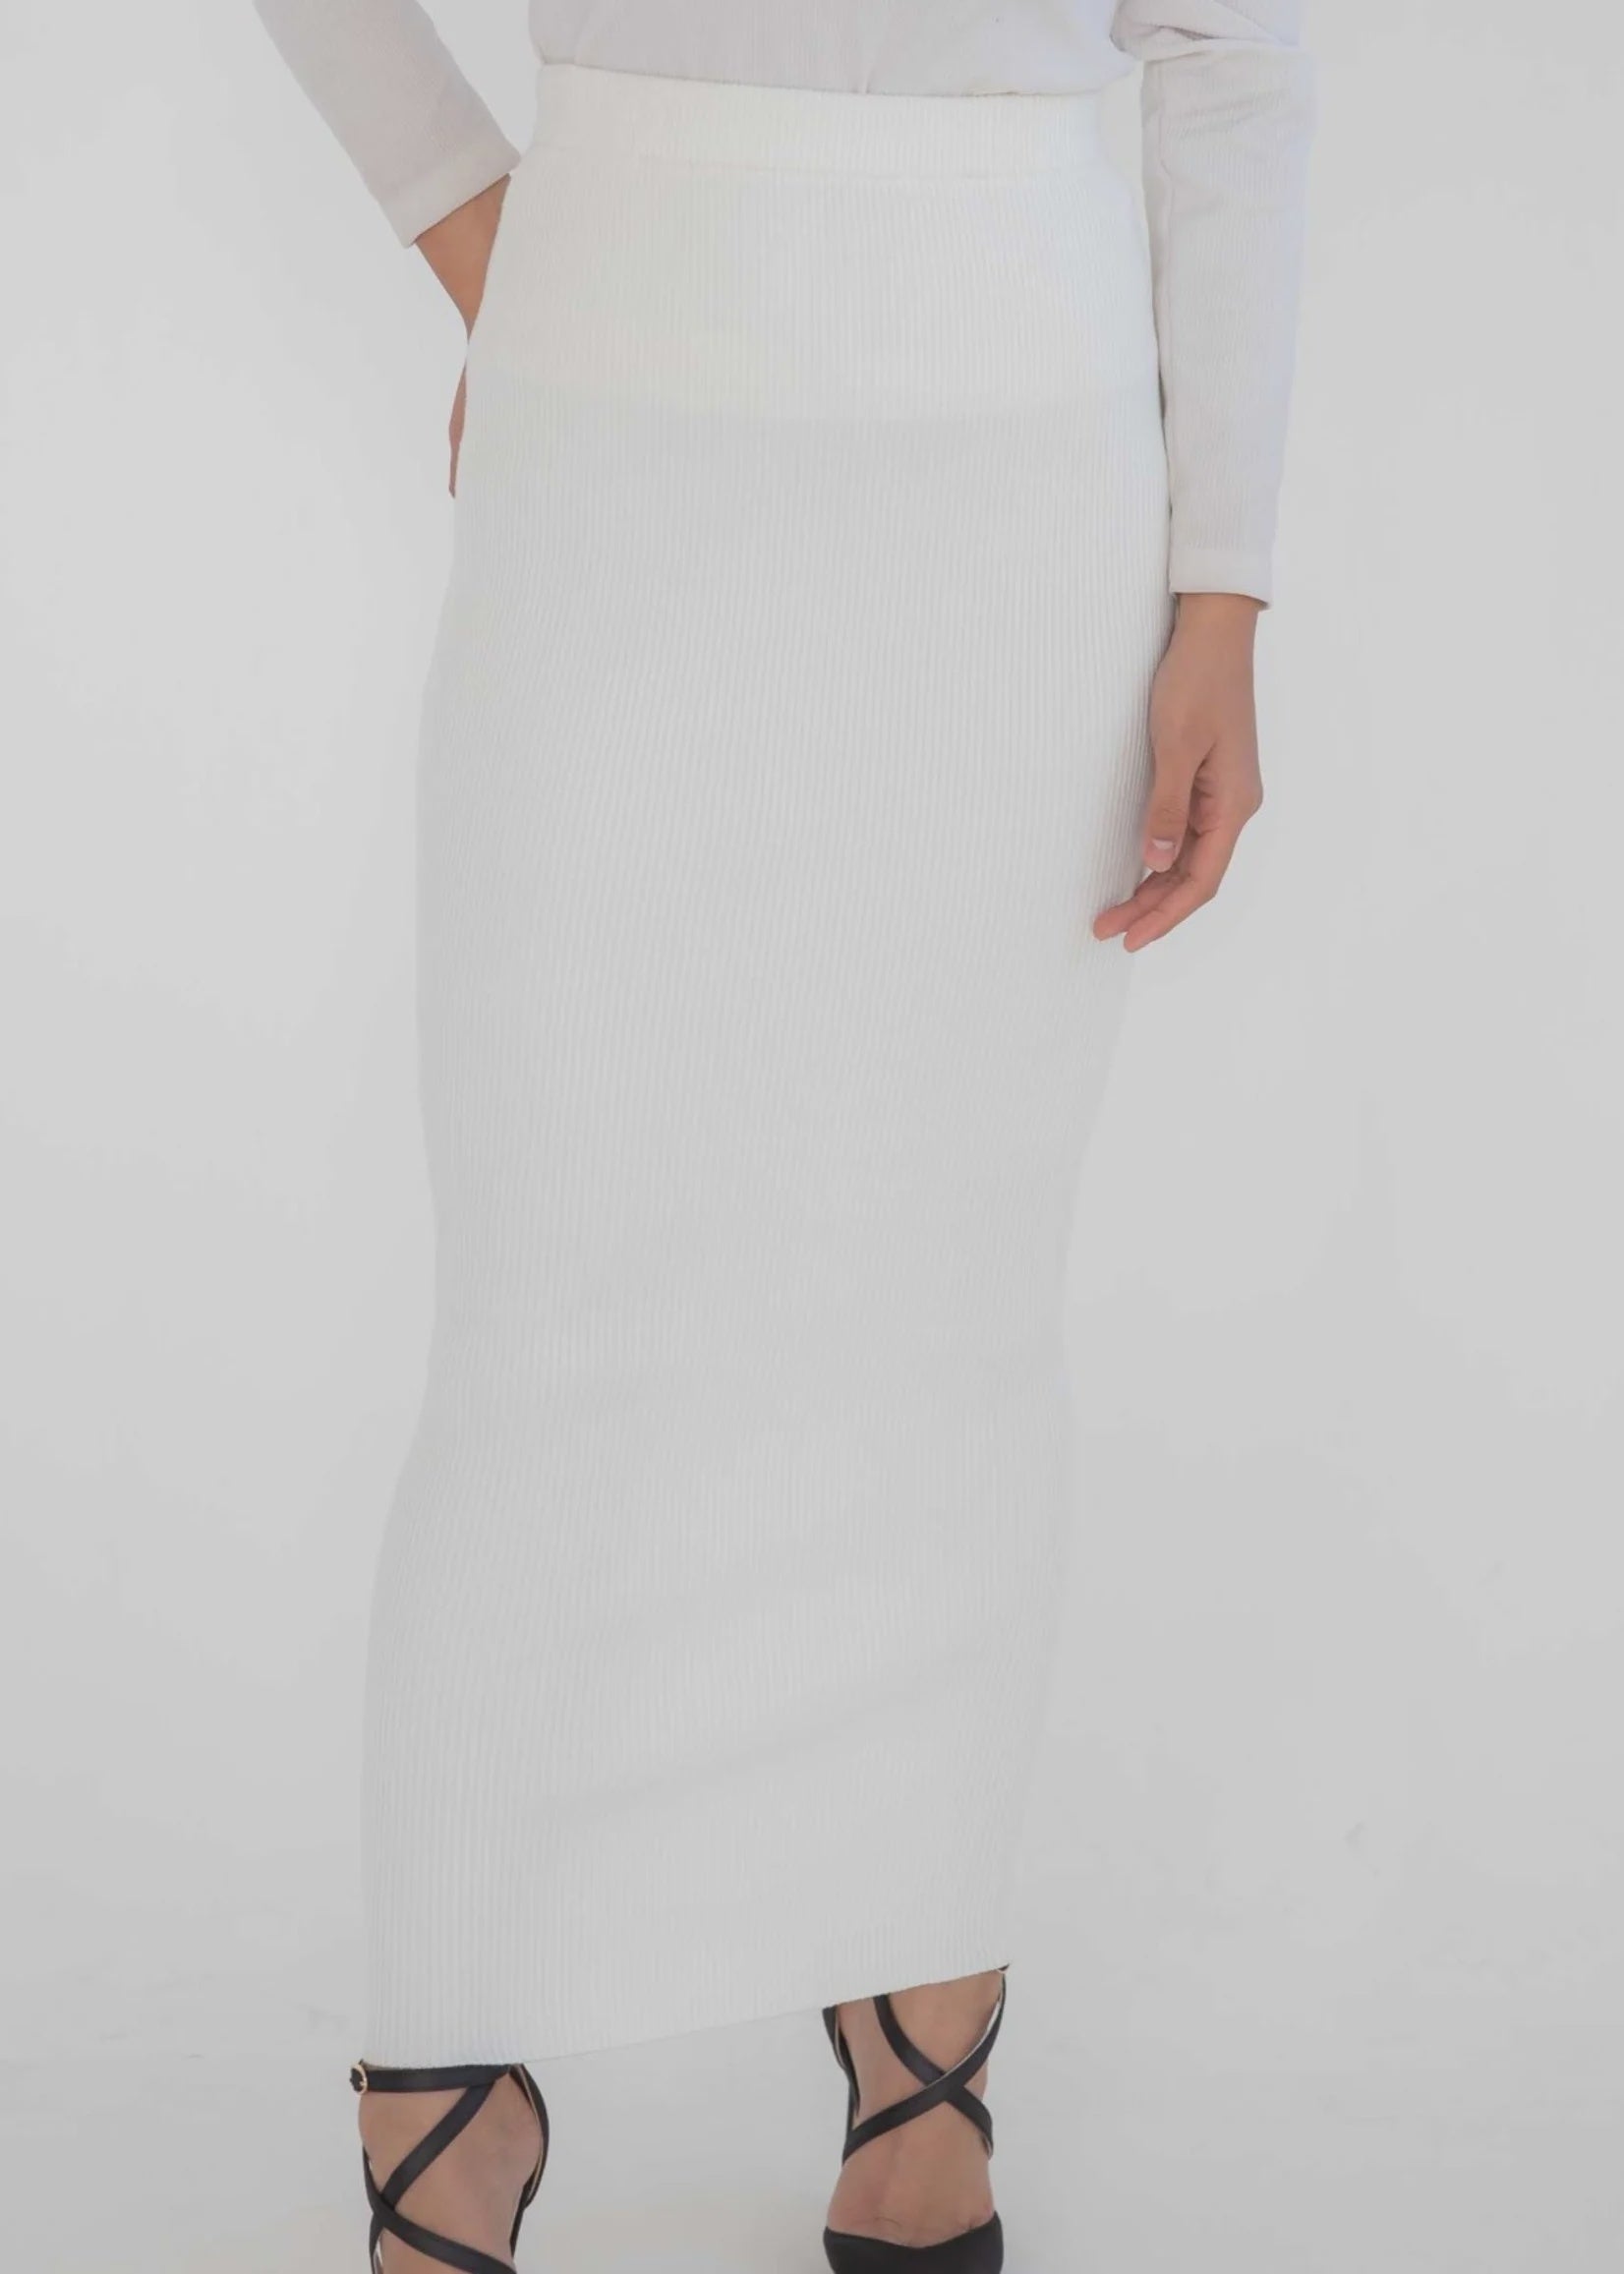 Ribbed Skirt - Ivory